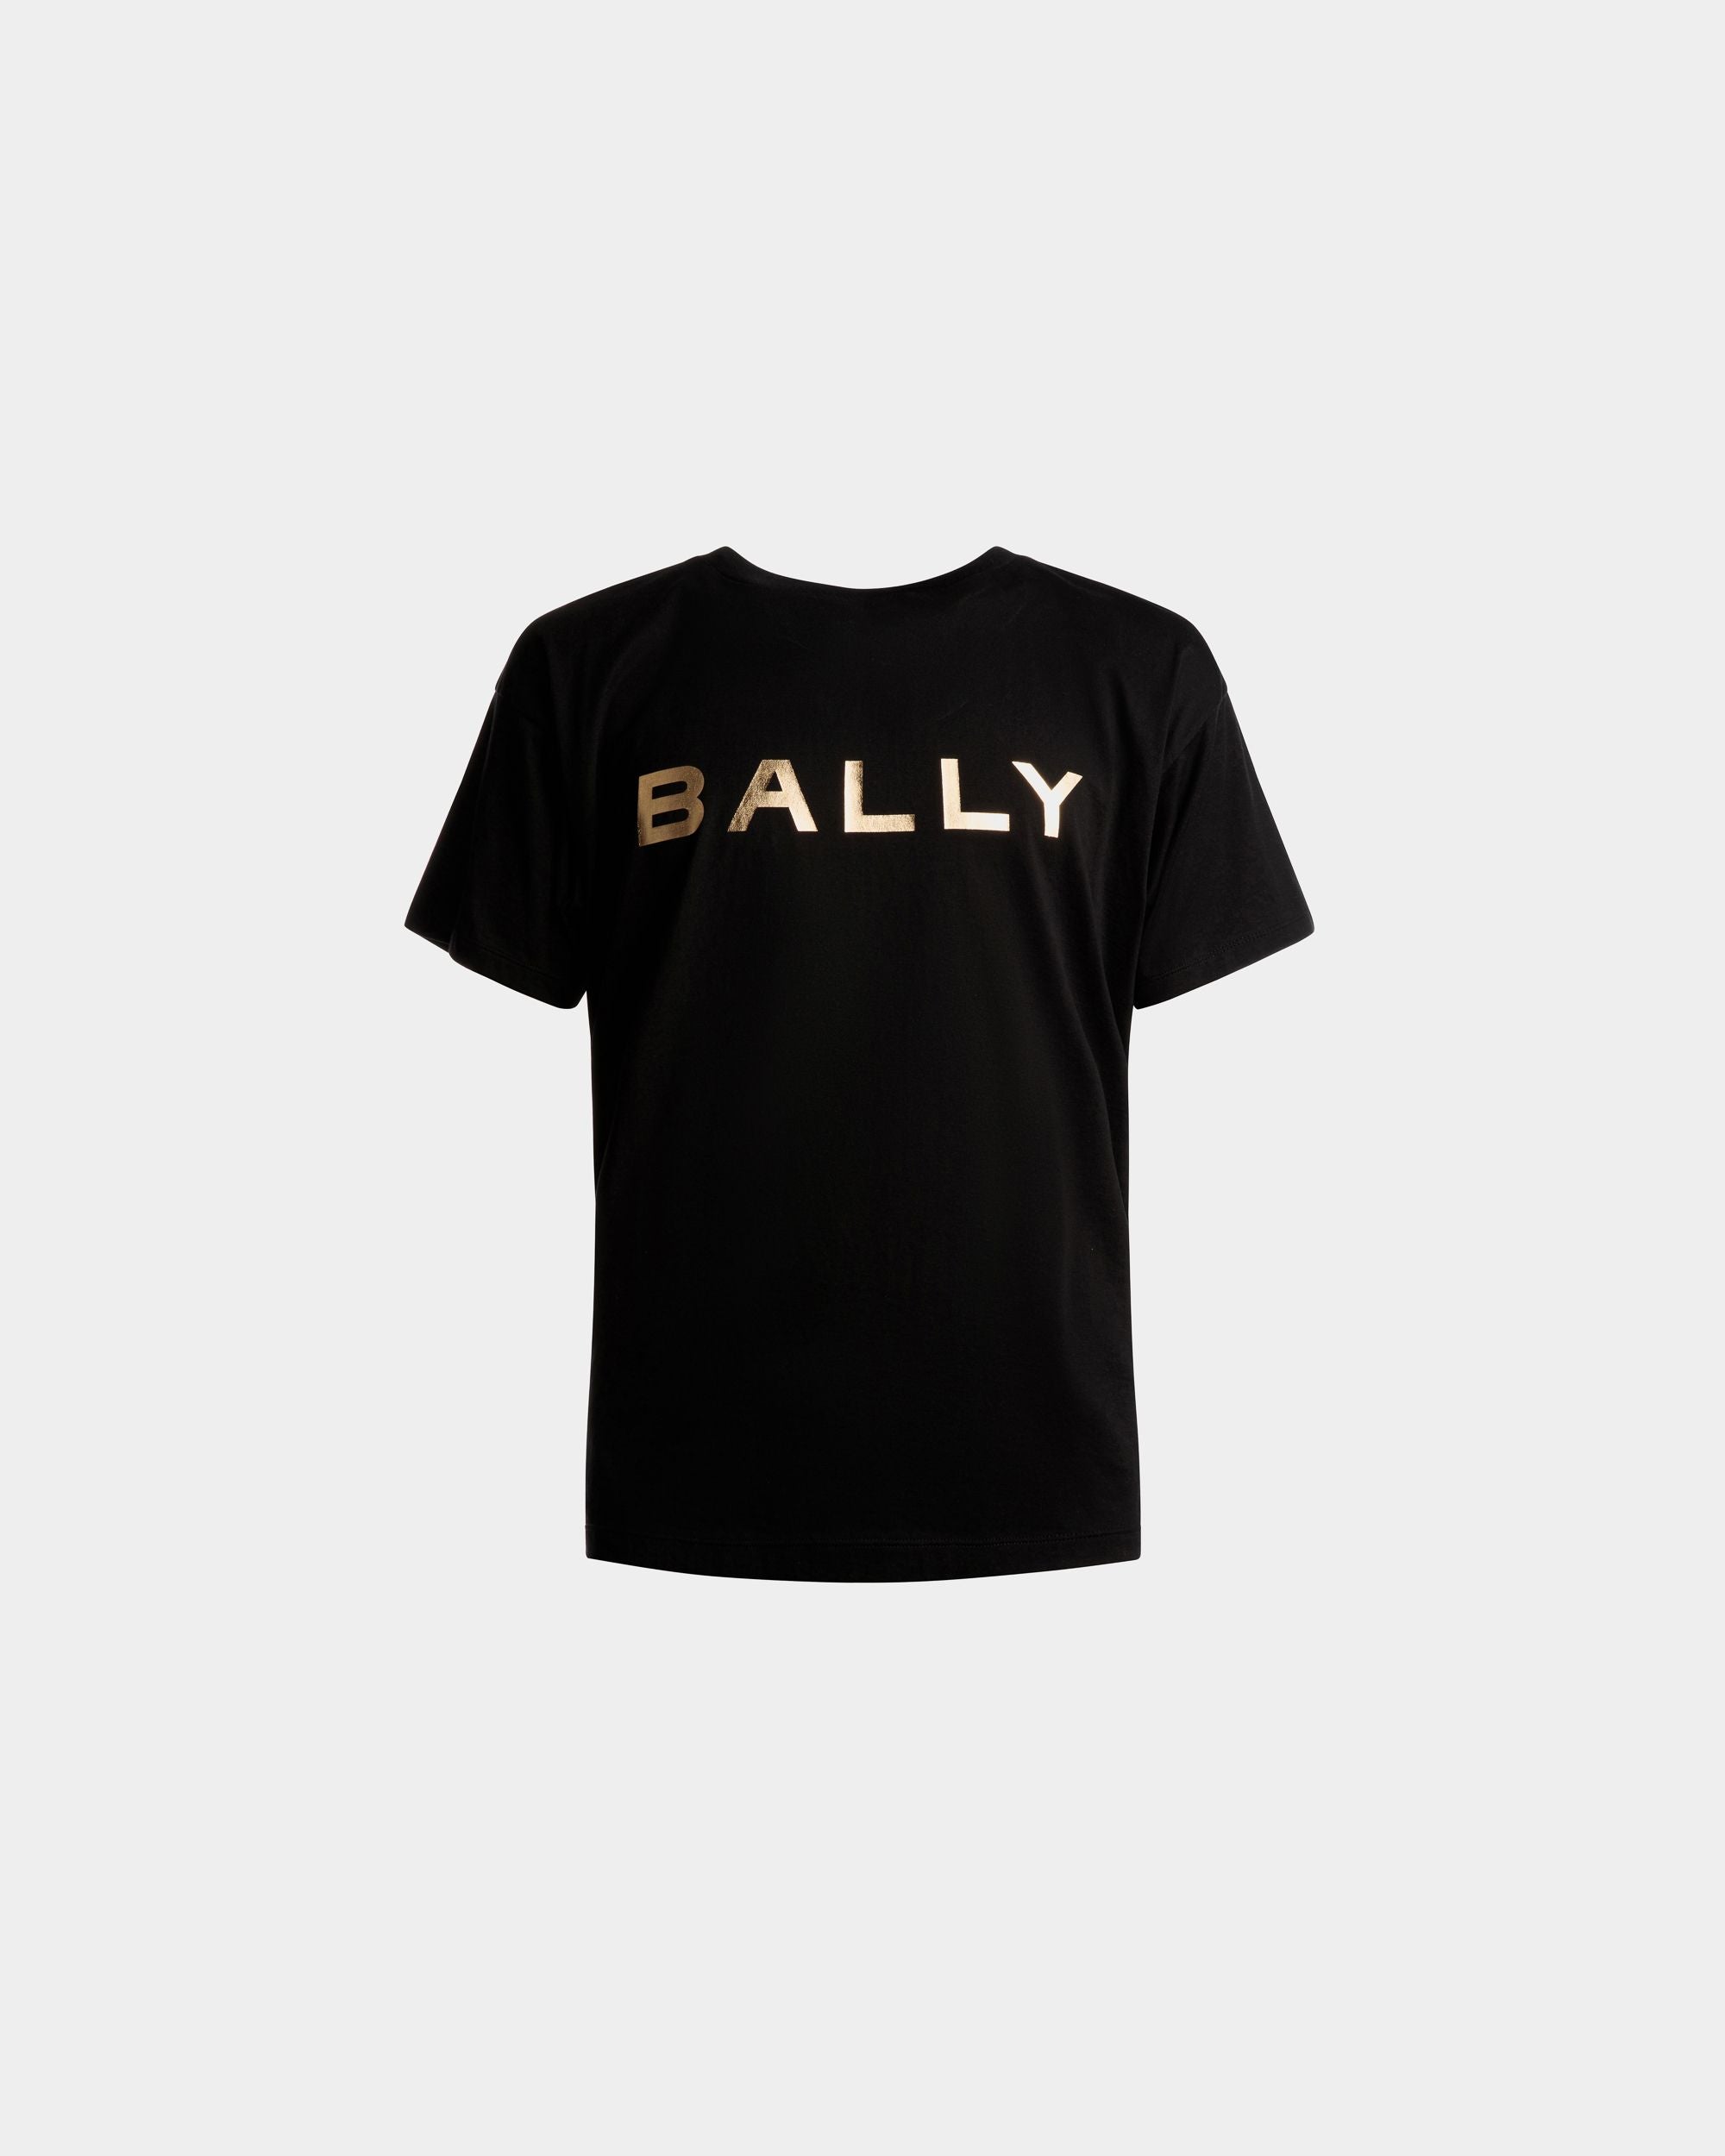 T-shirt con logo | T-shirt uomo | Cotone nero | Bally | Still Life Fronte